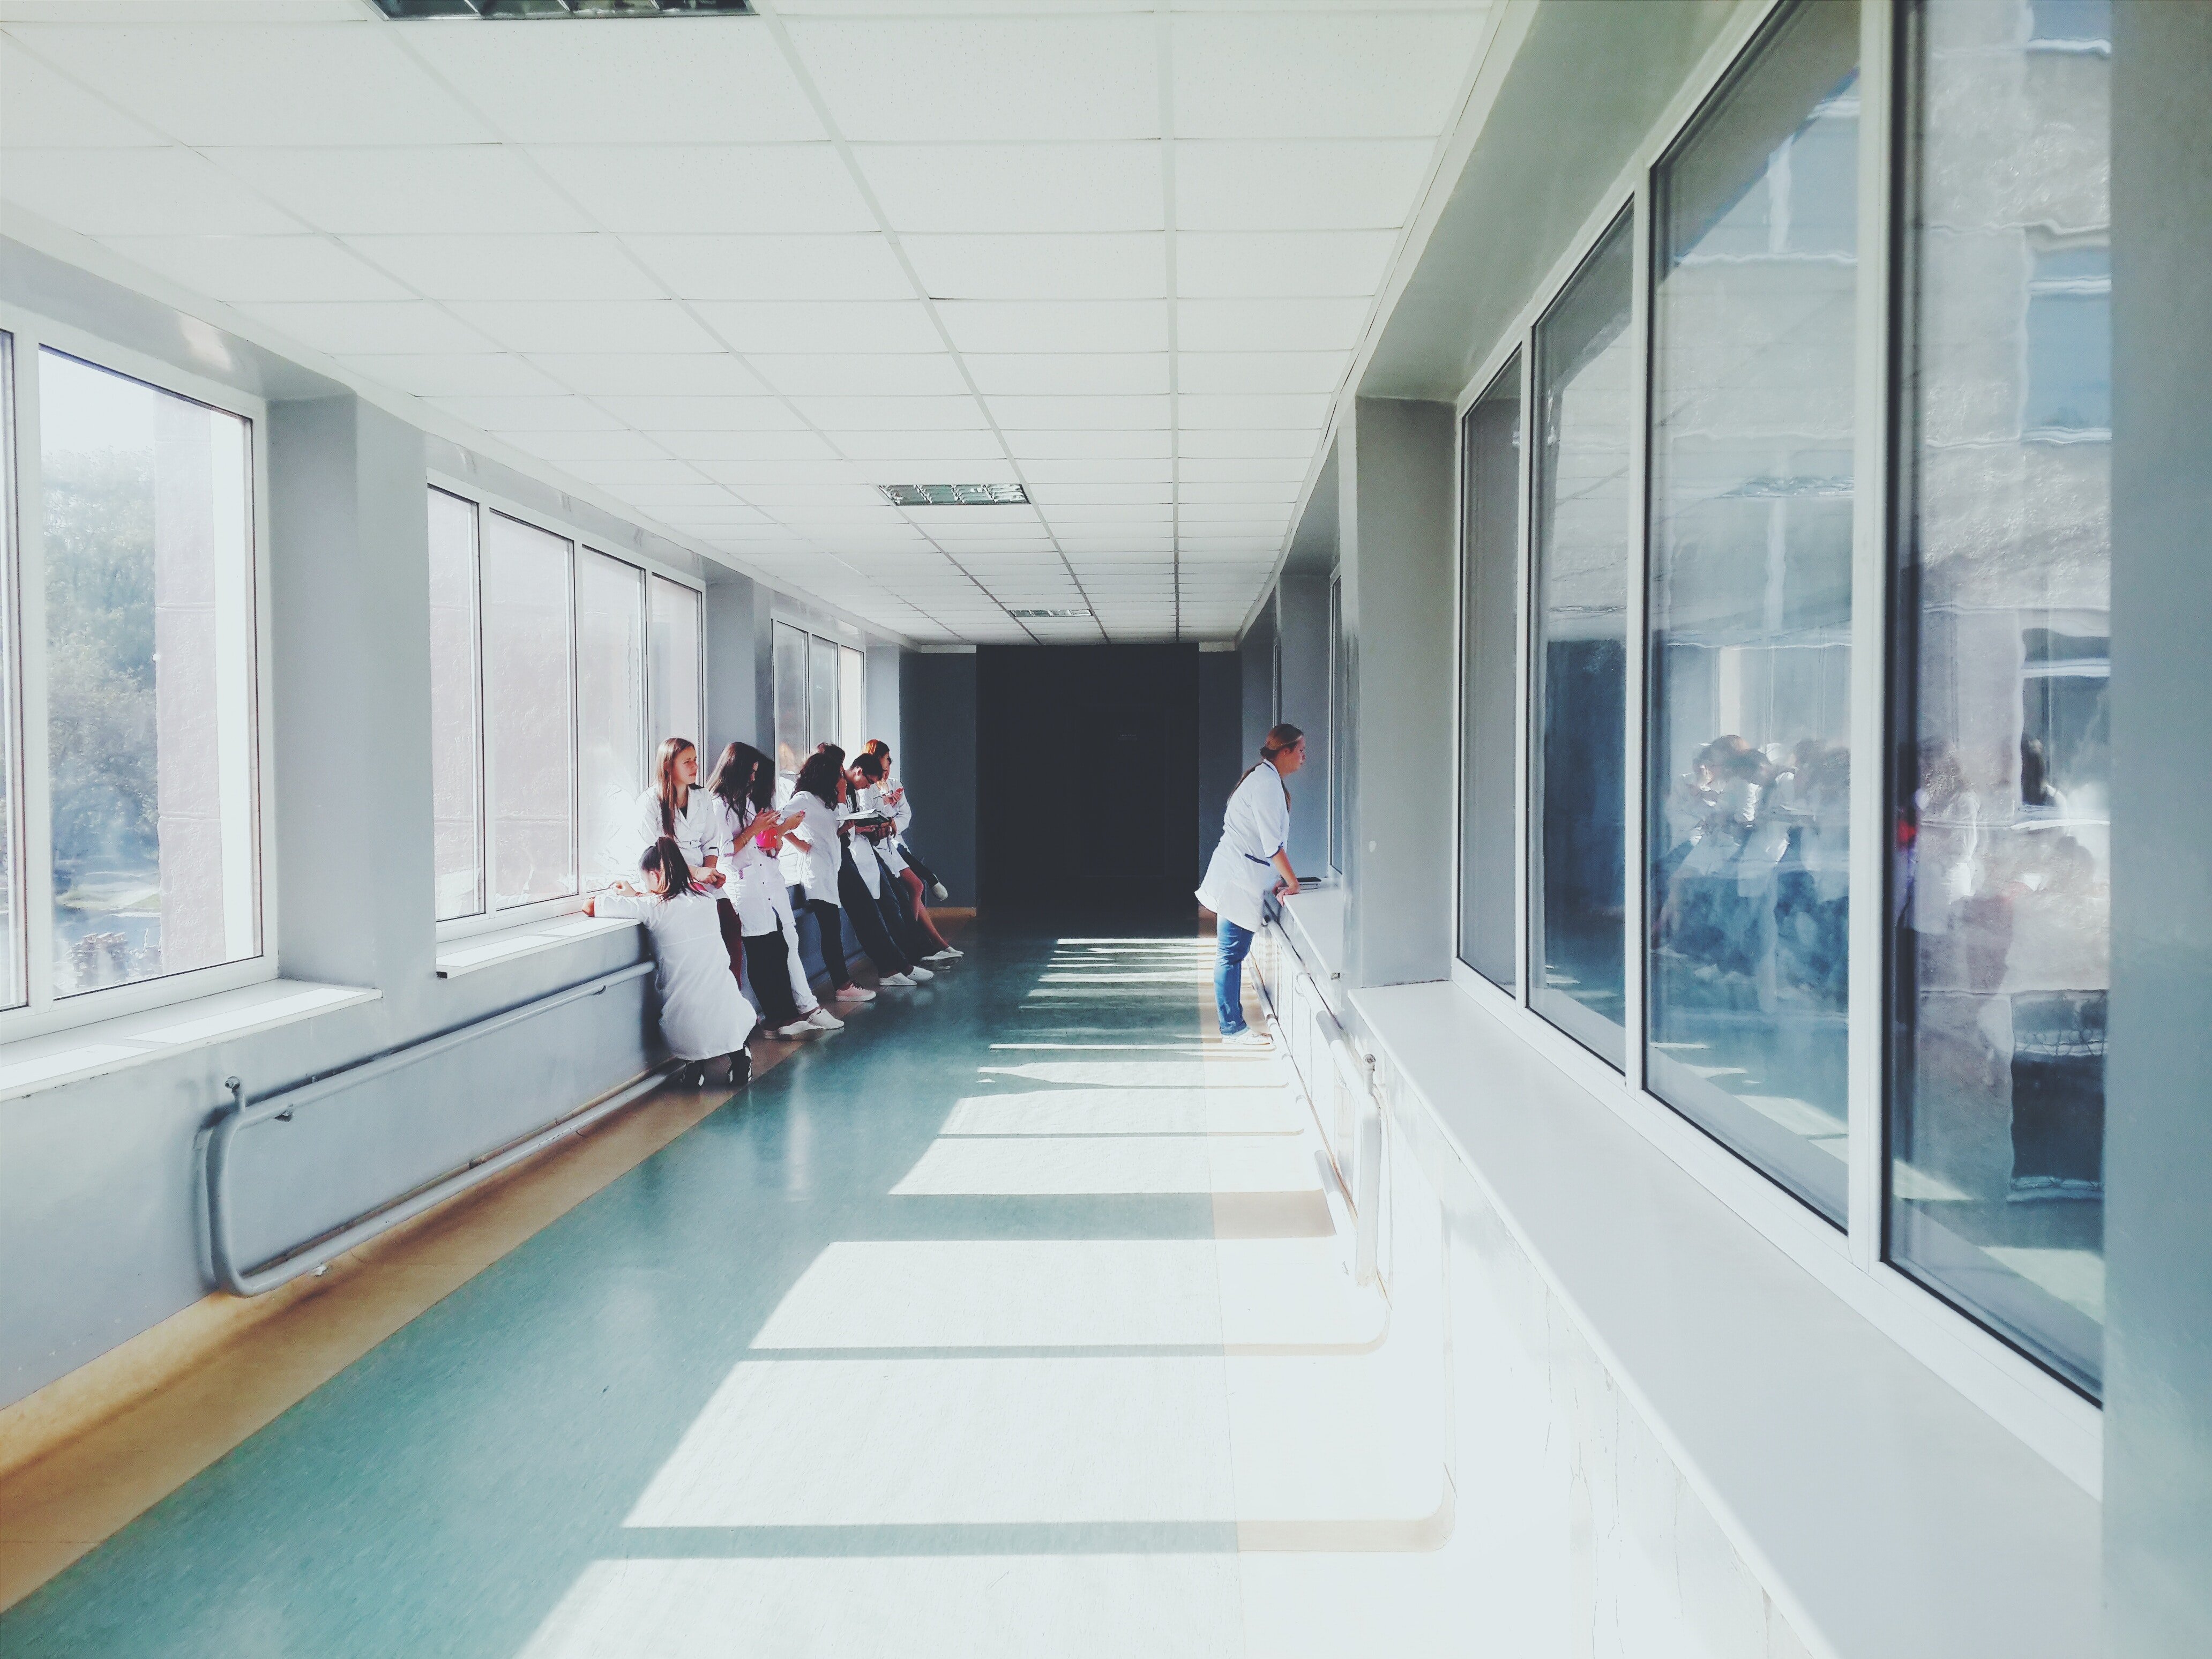 Hospital passage. | Source:Pexels/Oleskanebckuu